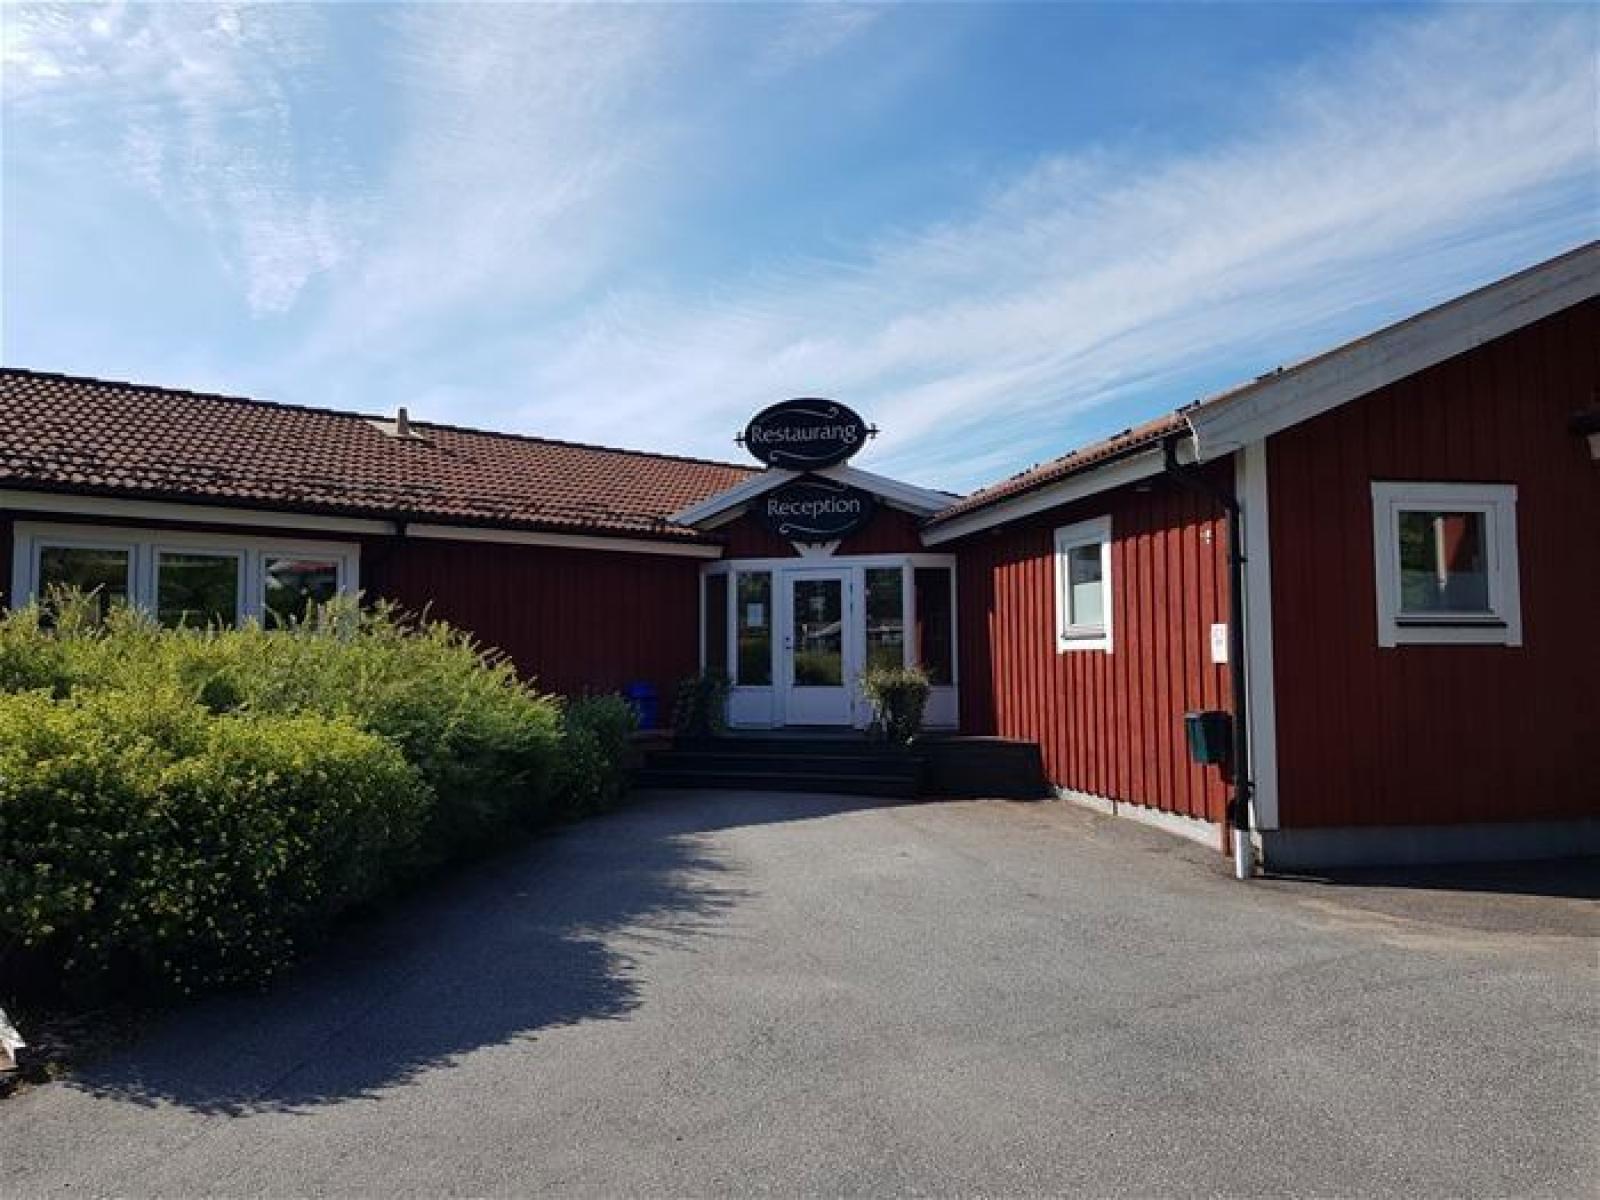 Norrfällsvikens Hotell & Konferens